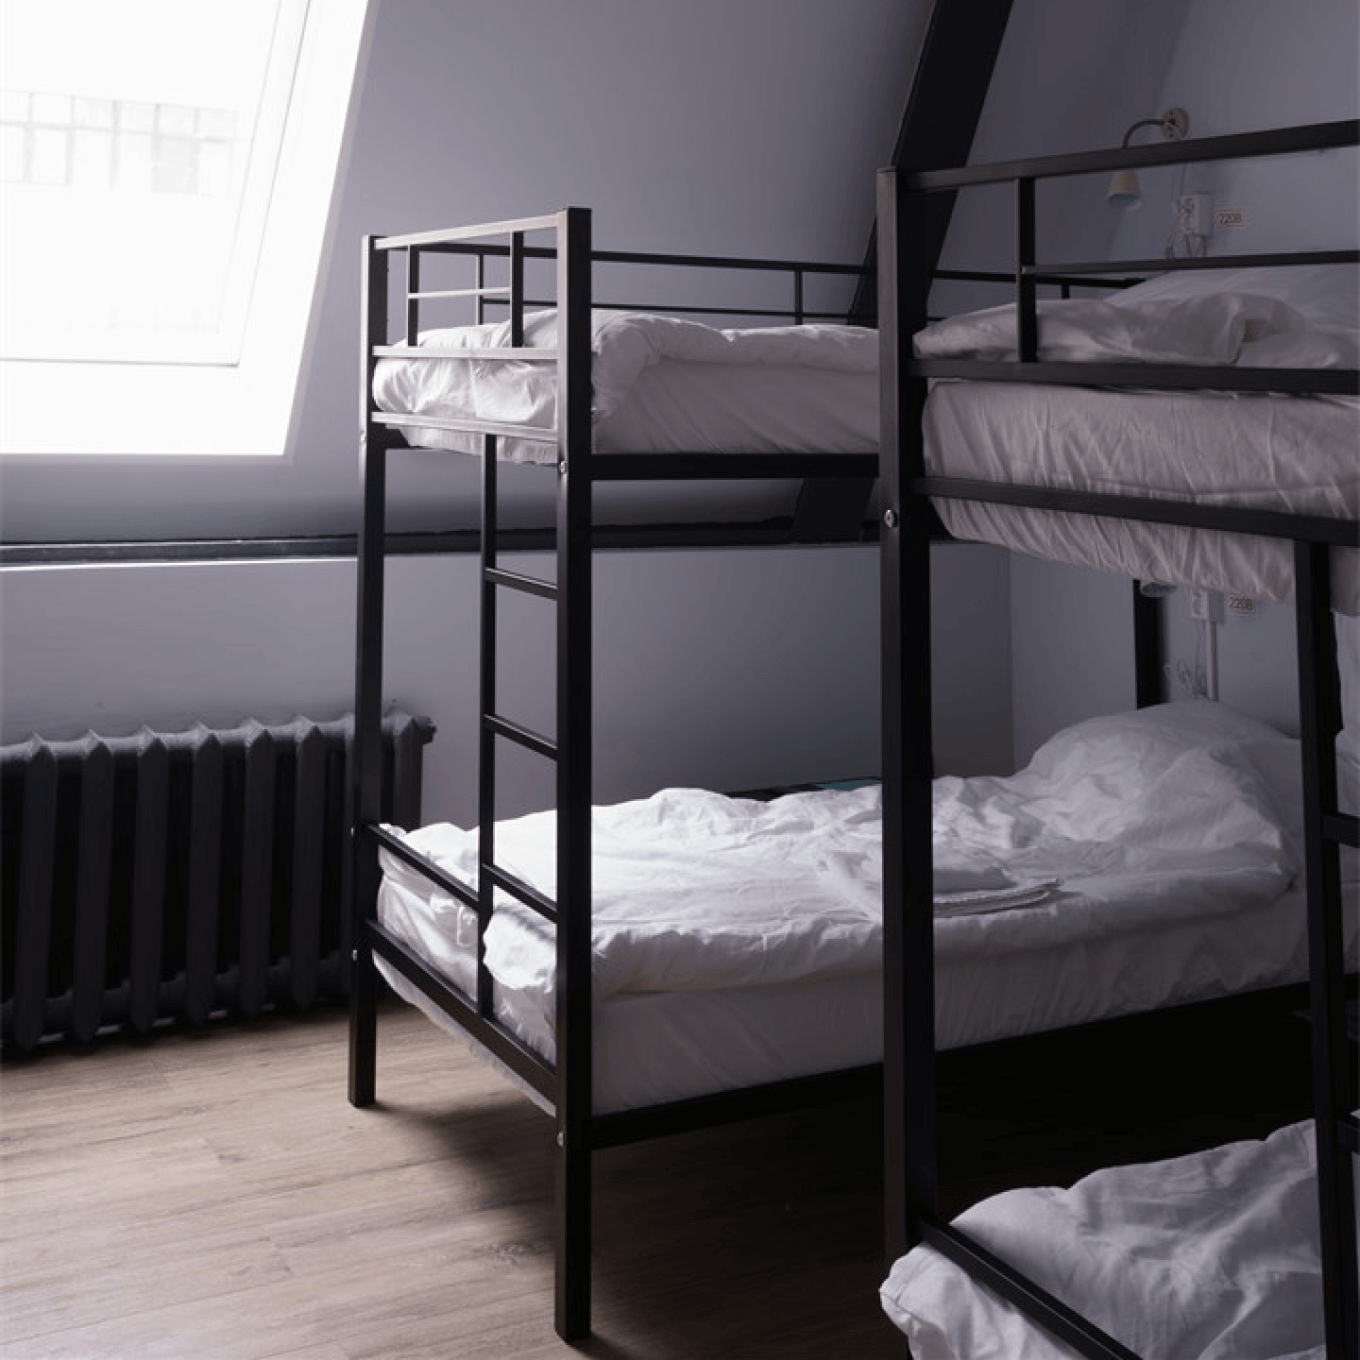 Двухъярусные кровати в хостеле